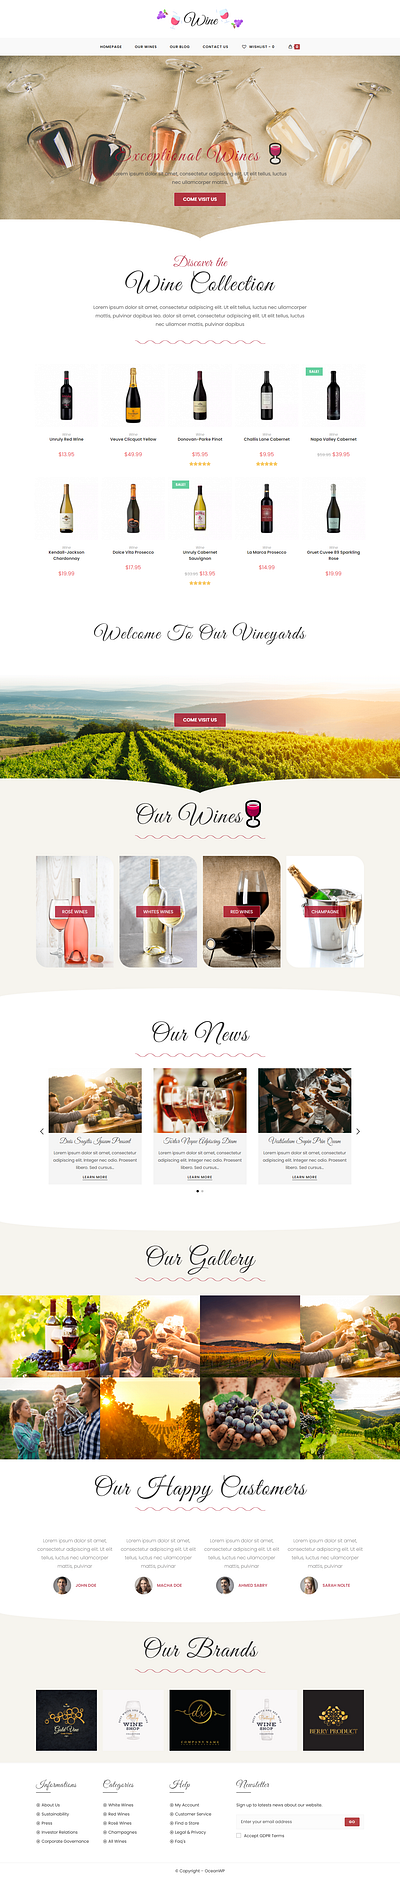 WINE SHOP WEBSITE shop website wine wine shop website